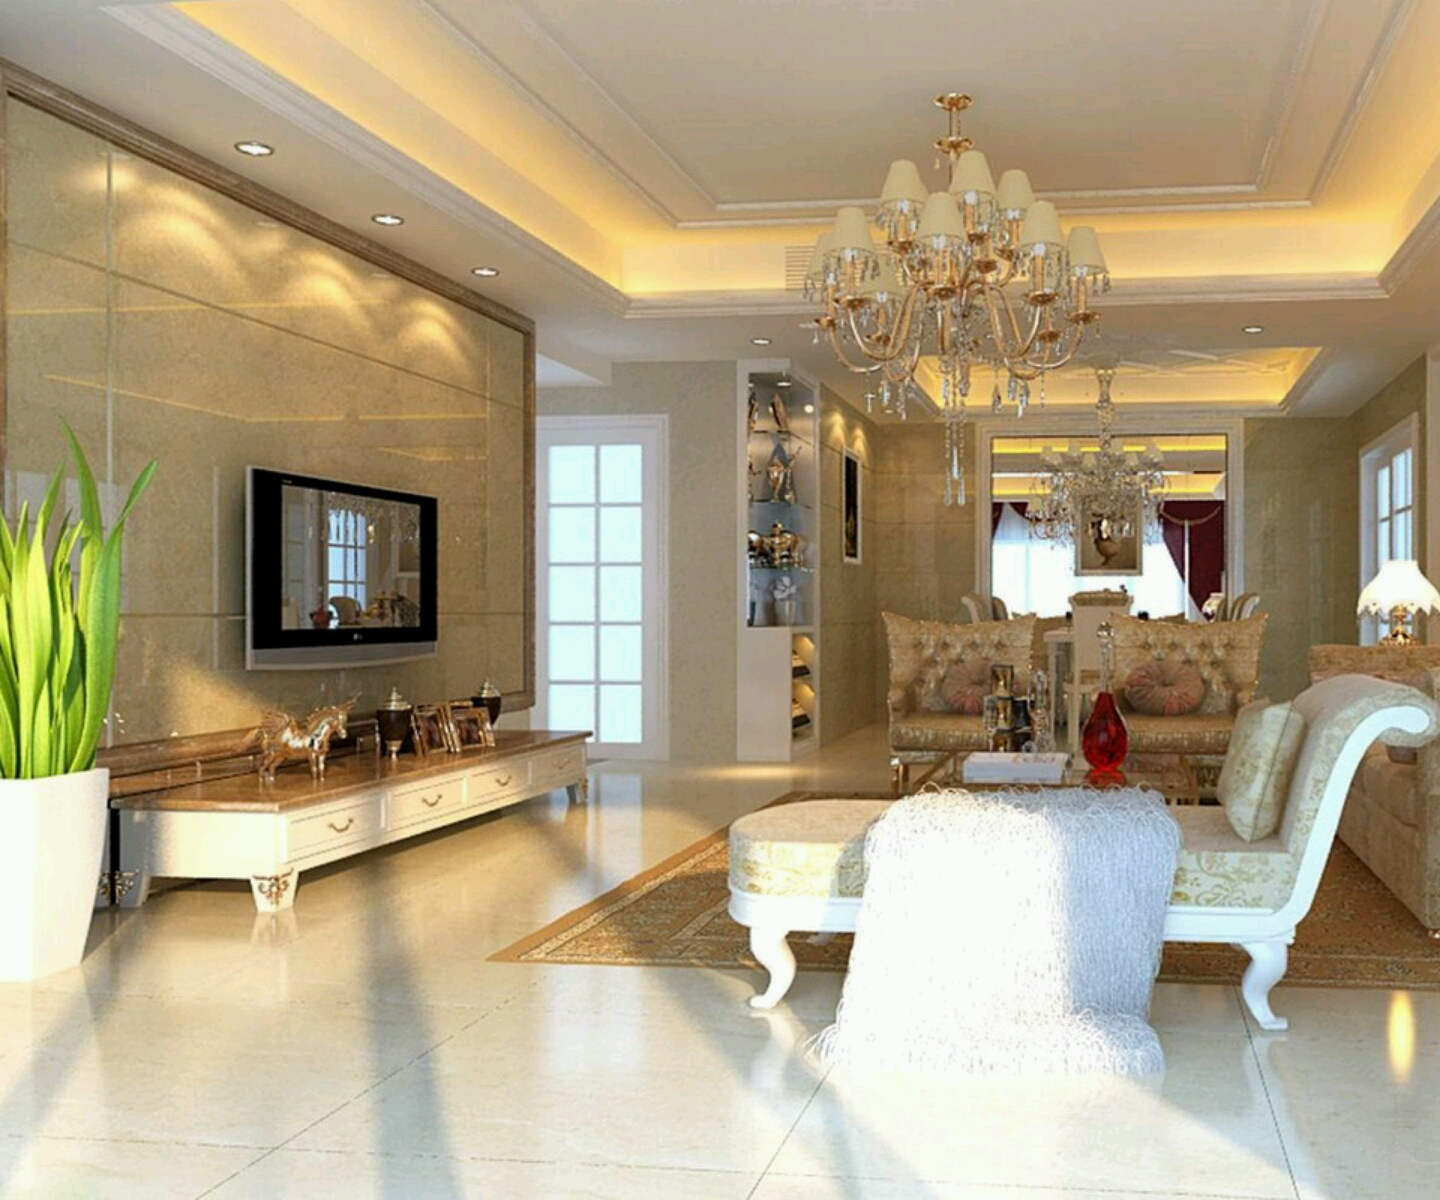 Living Room Dizain | Joy Studio Design Gallery - Best Design